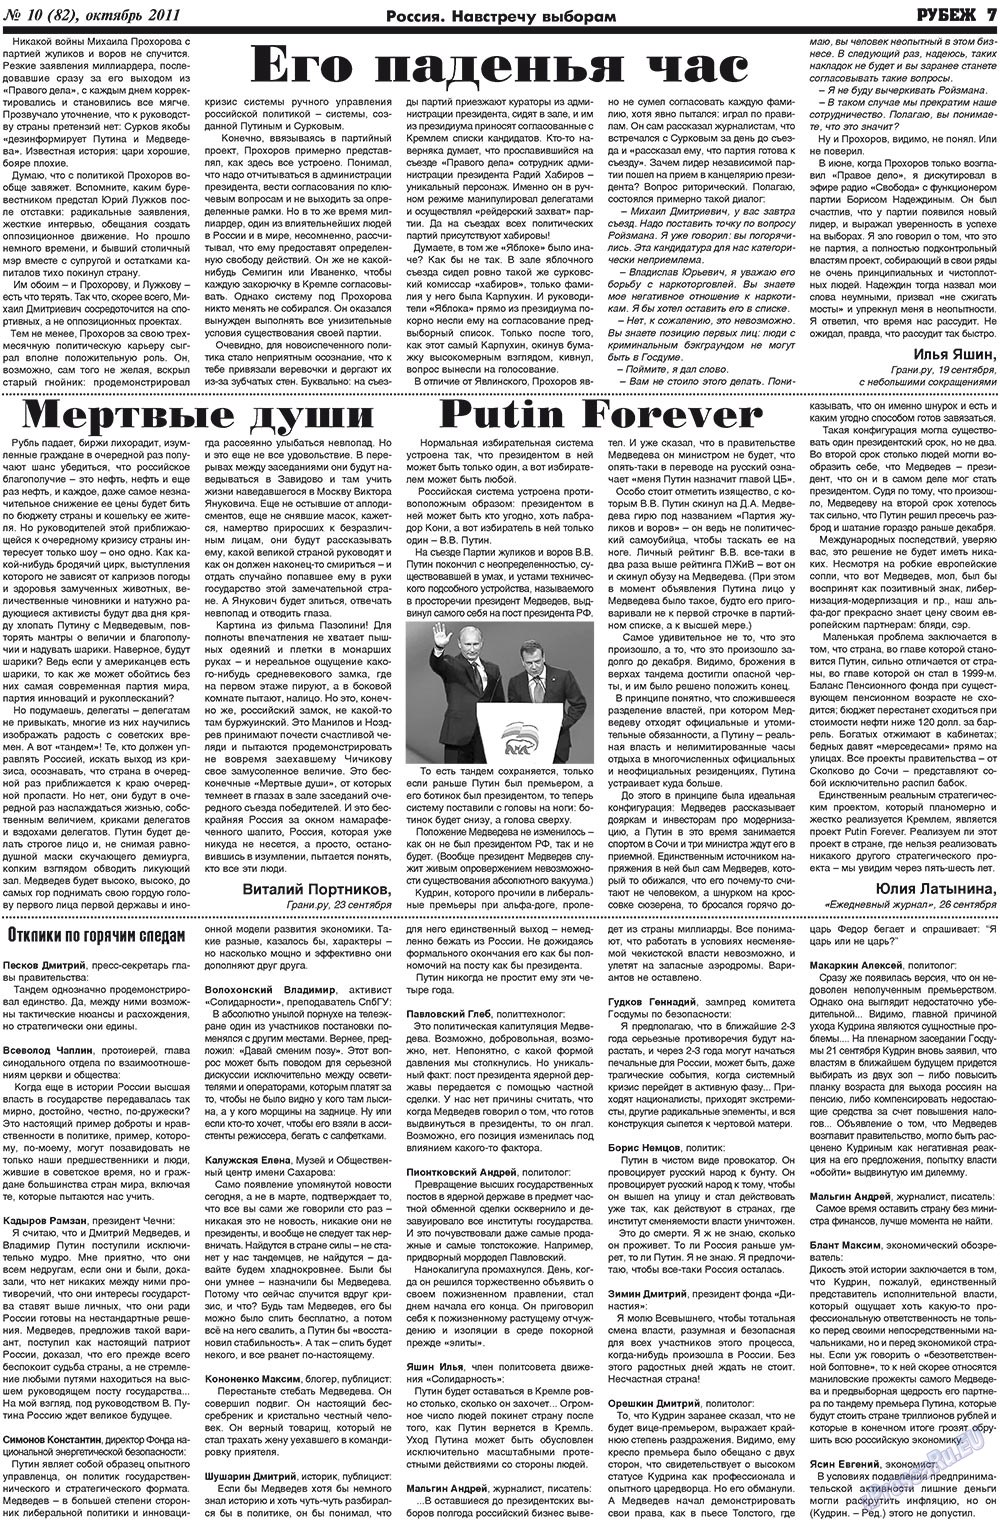 Рубеж (газета). 2011 год, номер 10, стр. 7